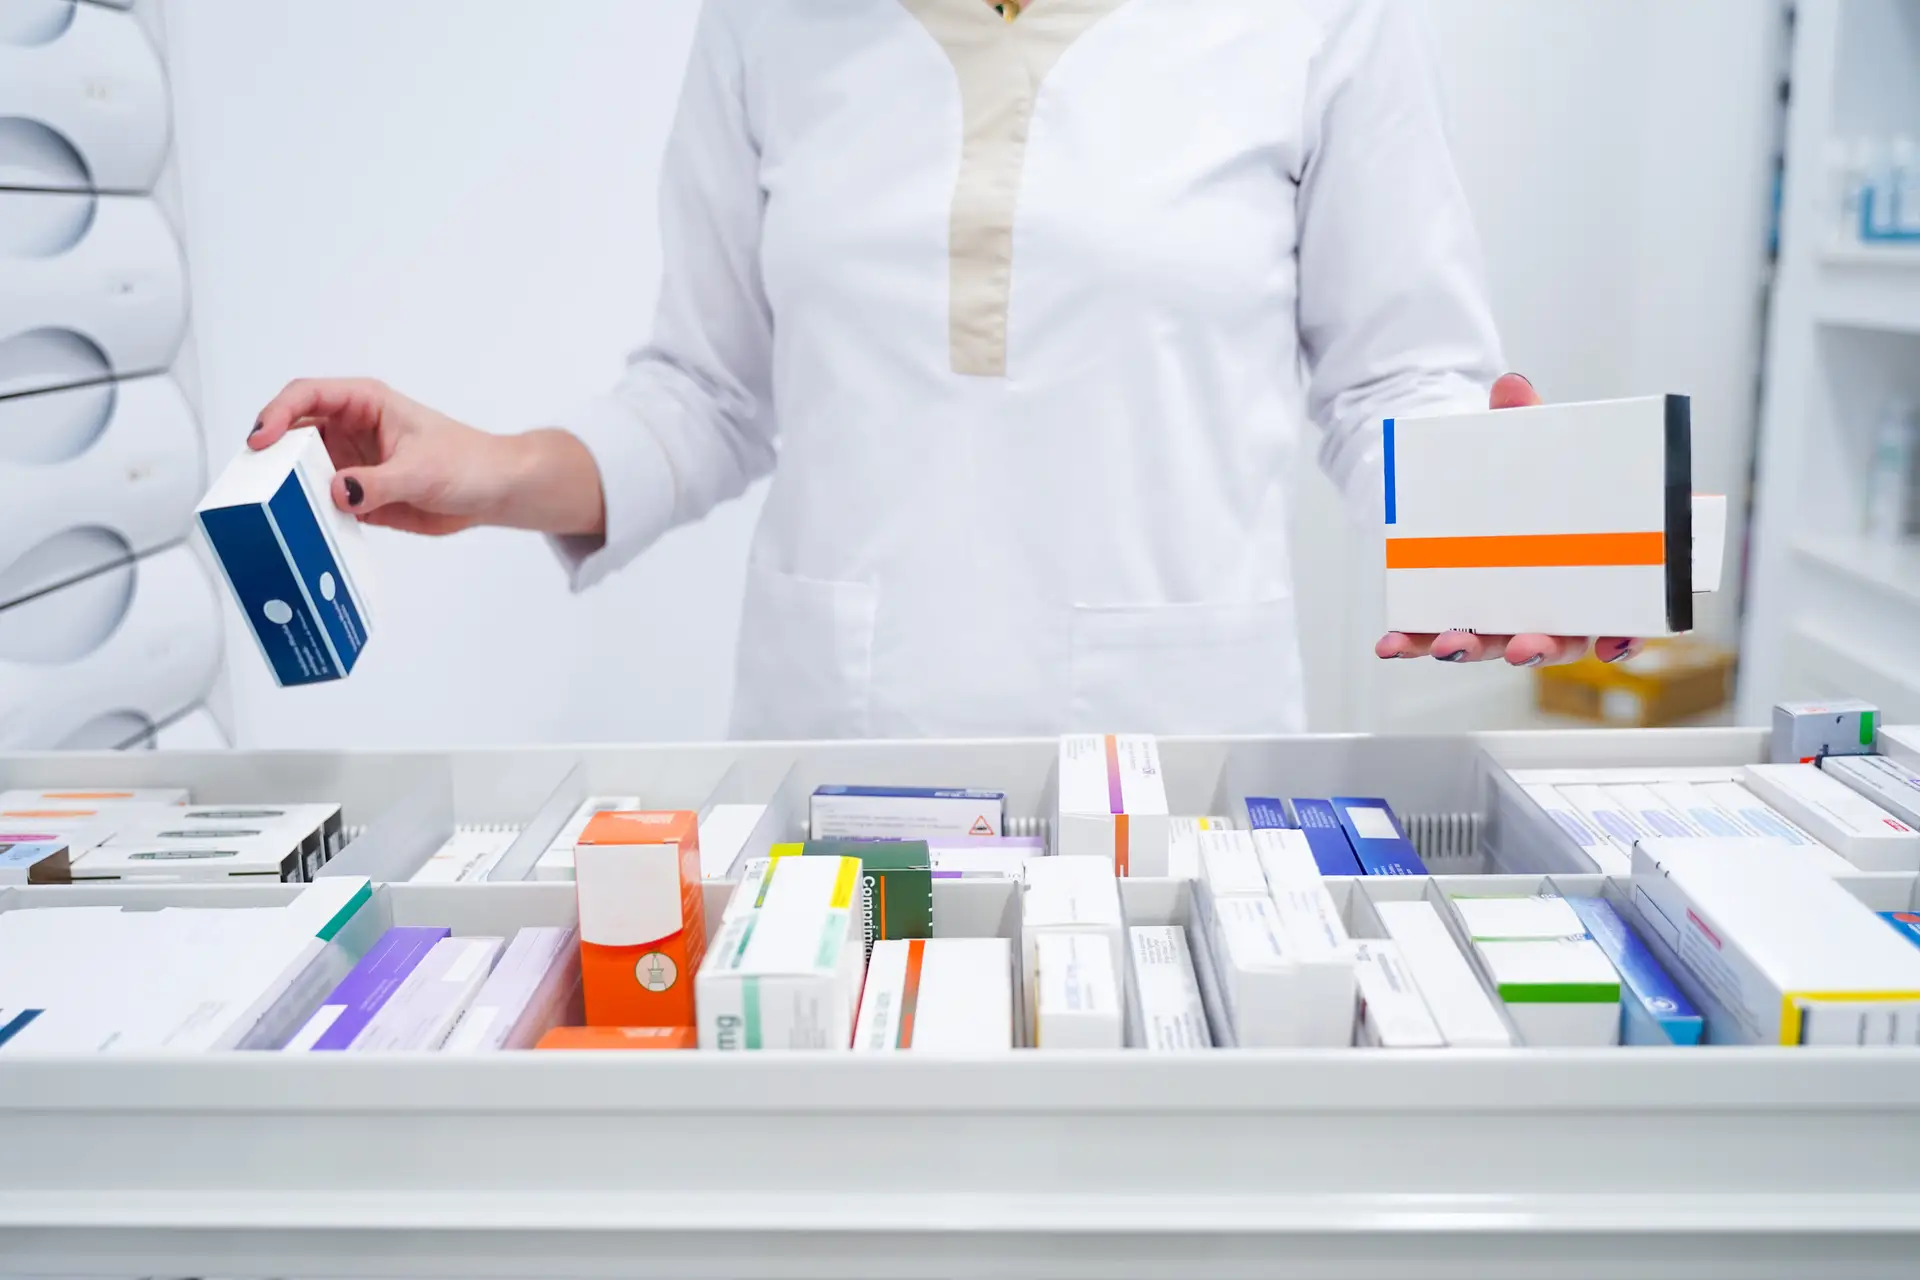 Serviços farmacêuticos dos hospitais do SNS podem enfrentar situação “muito complicada”